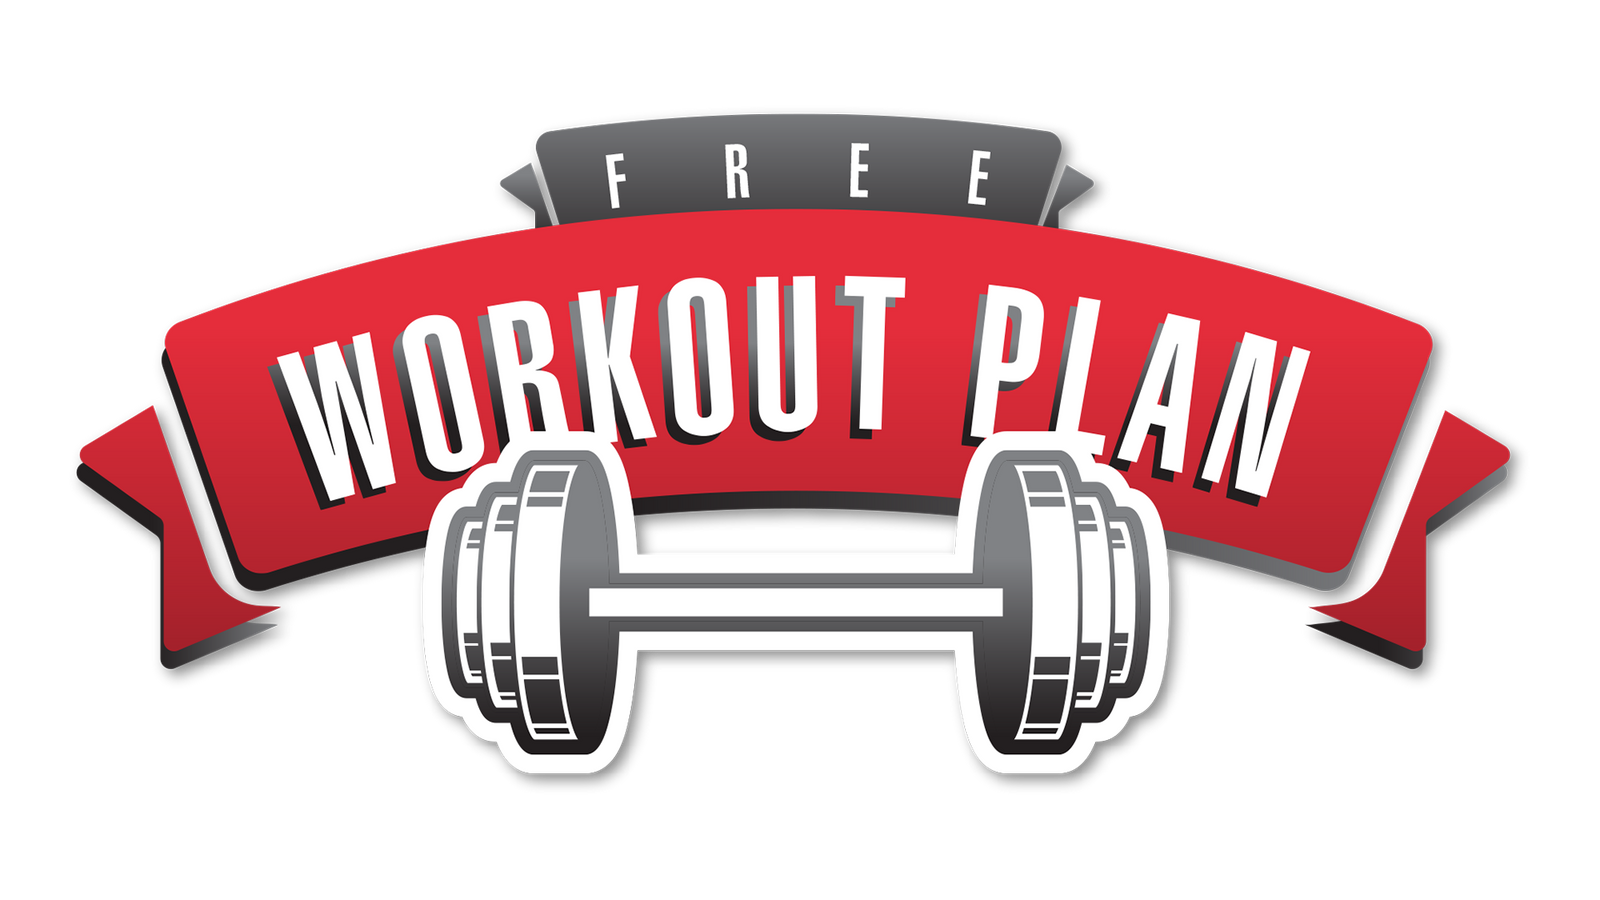 free workout plan logo